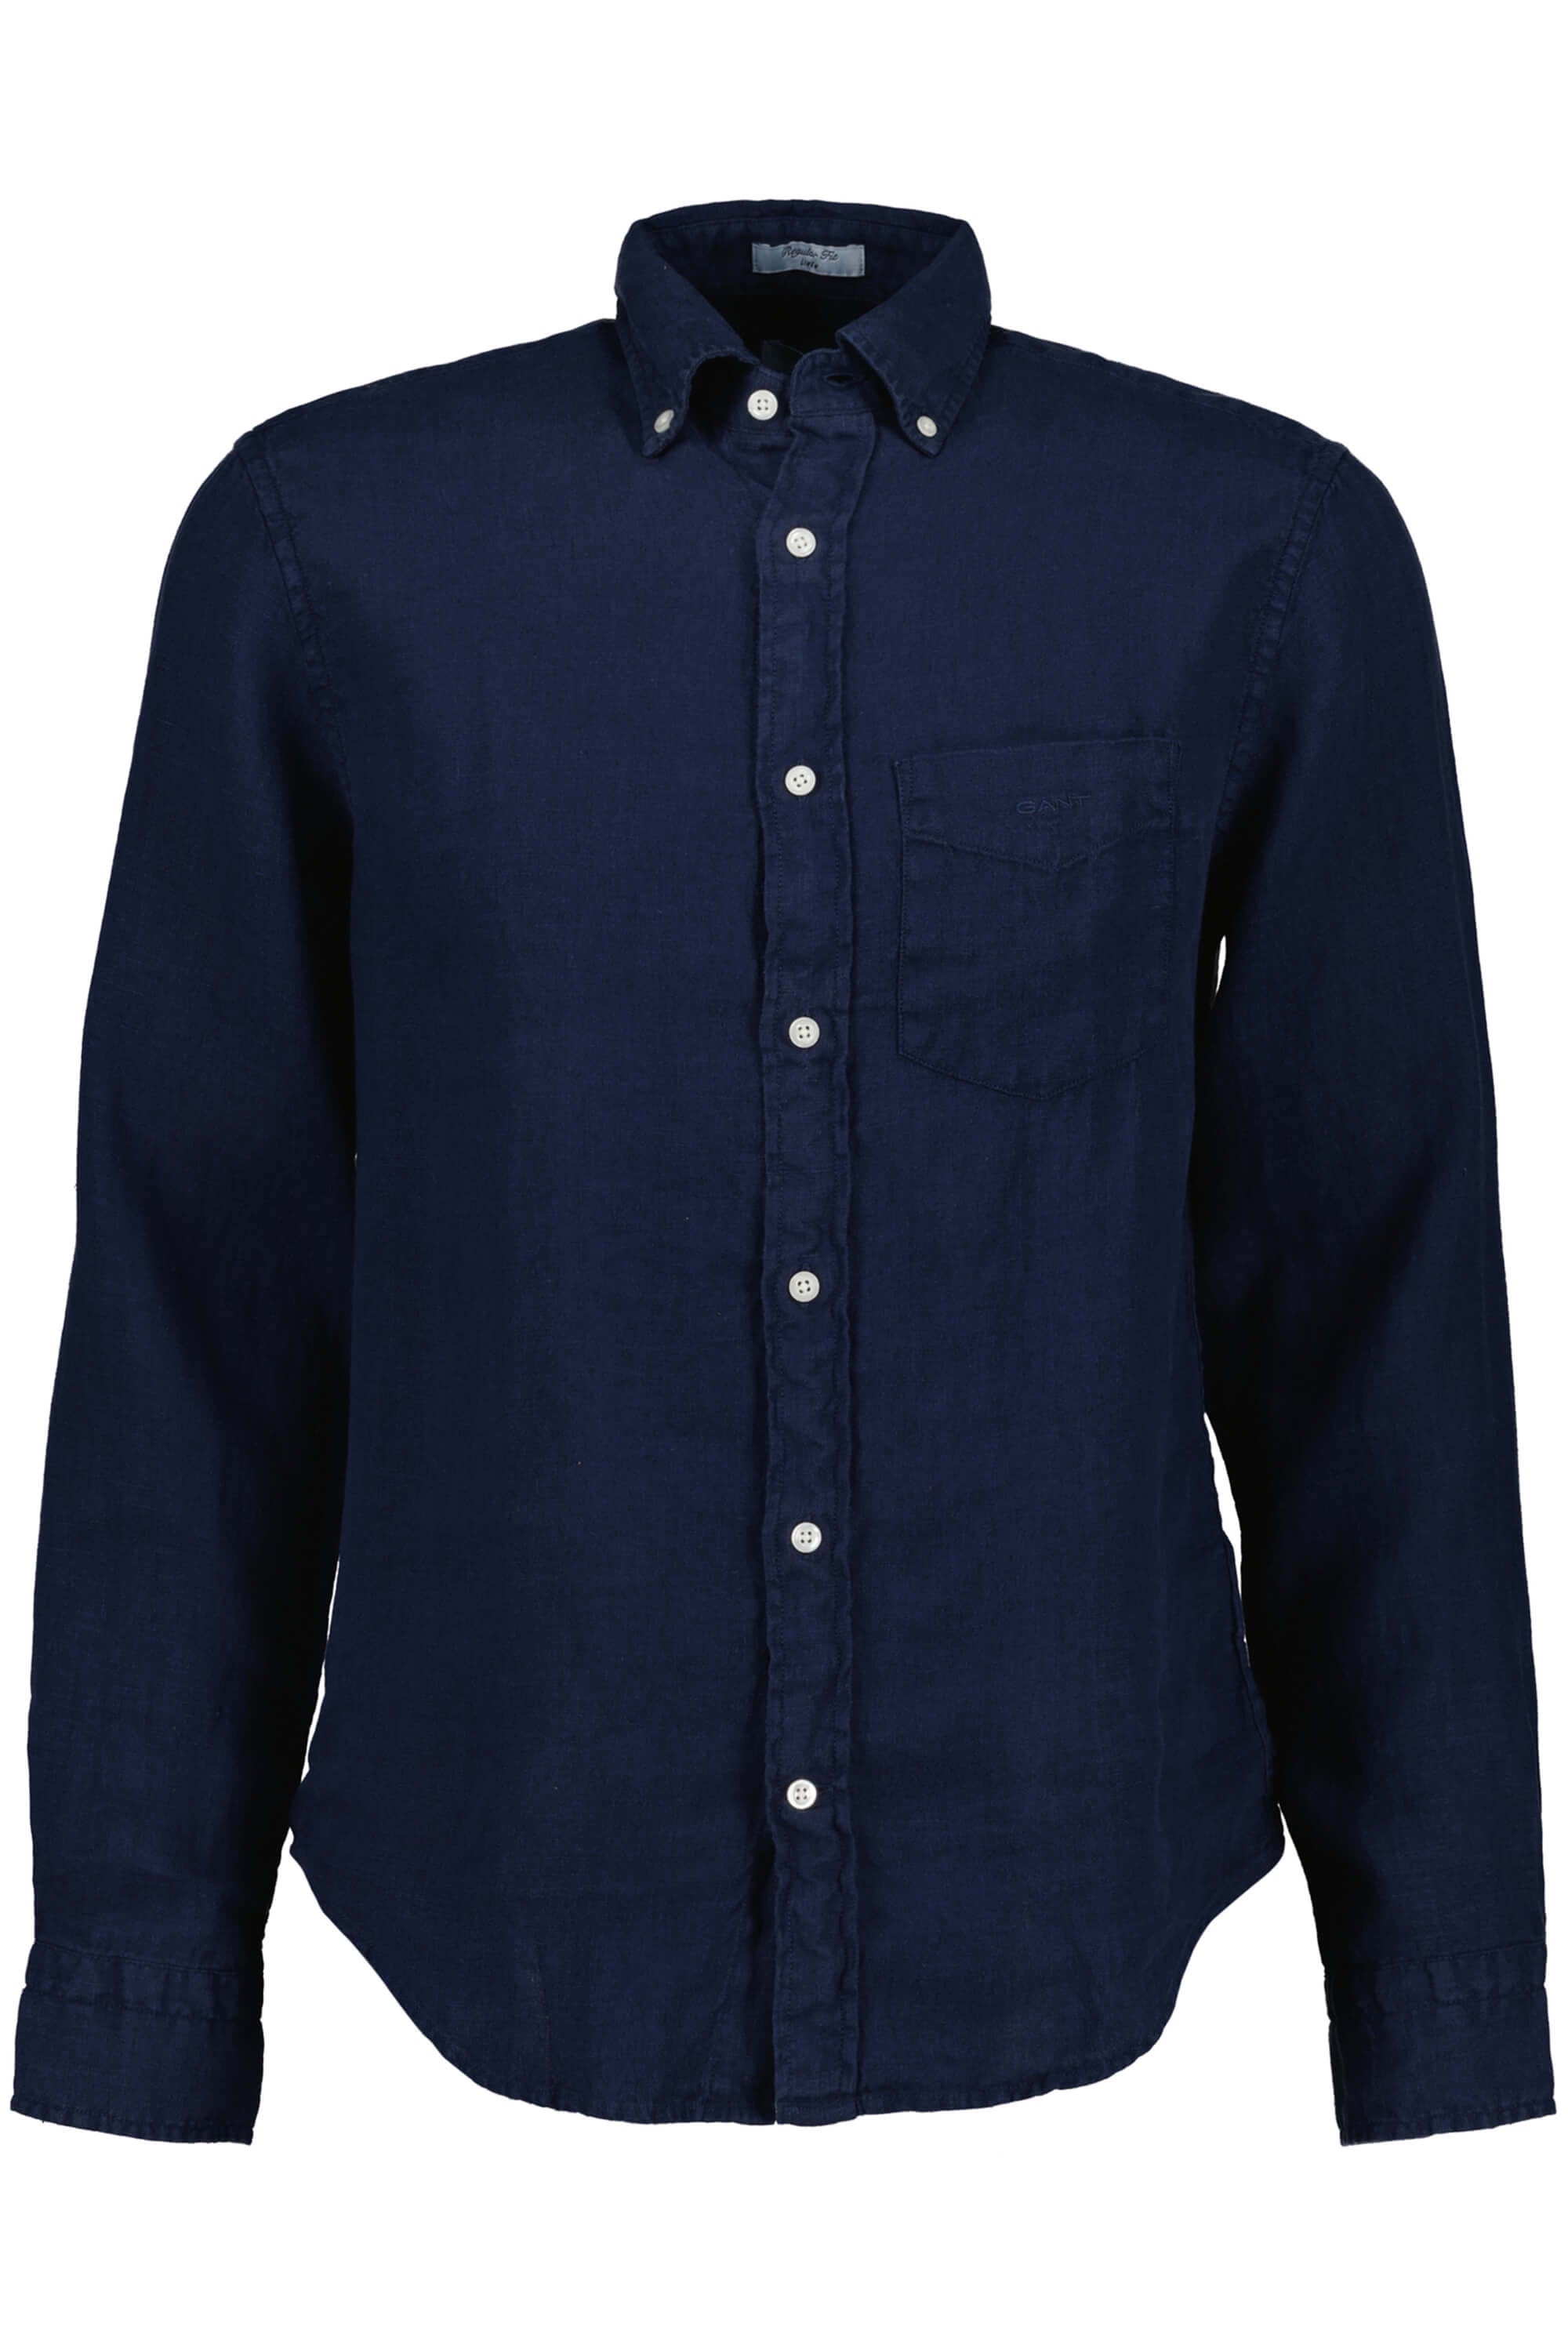 Gant Garment Dyed Linen Shirt